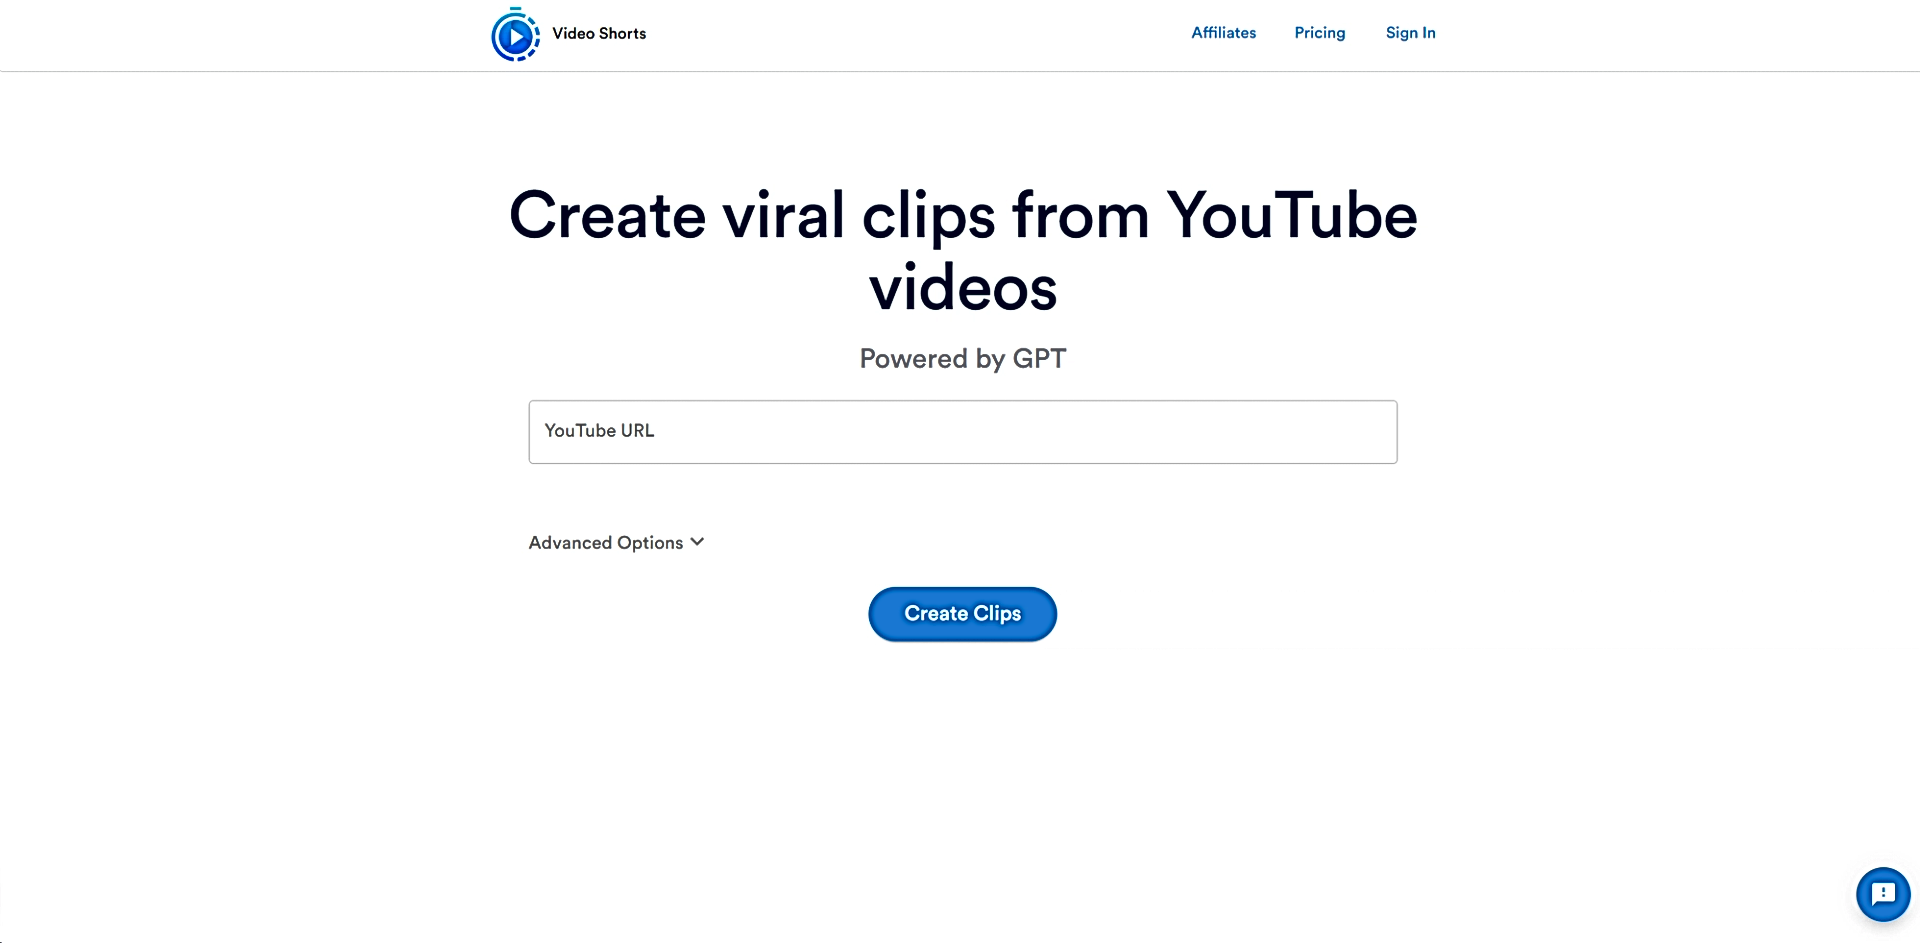 VideoShorts featured